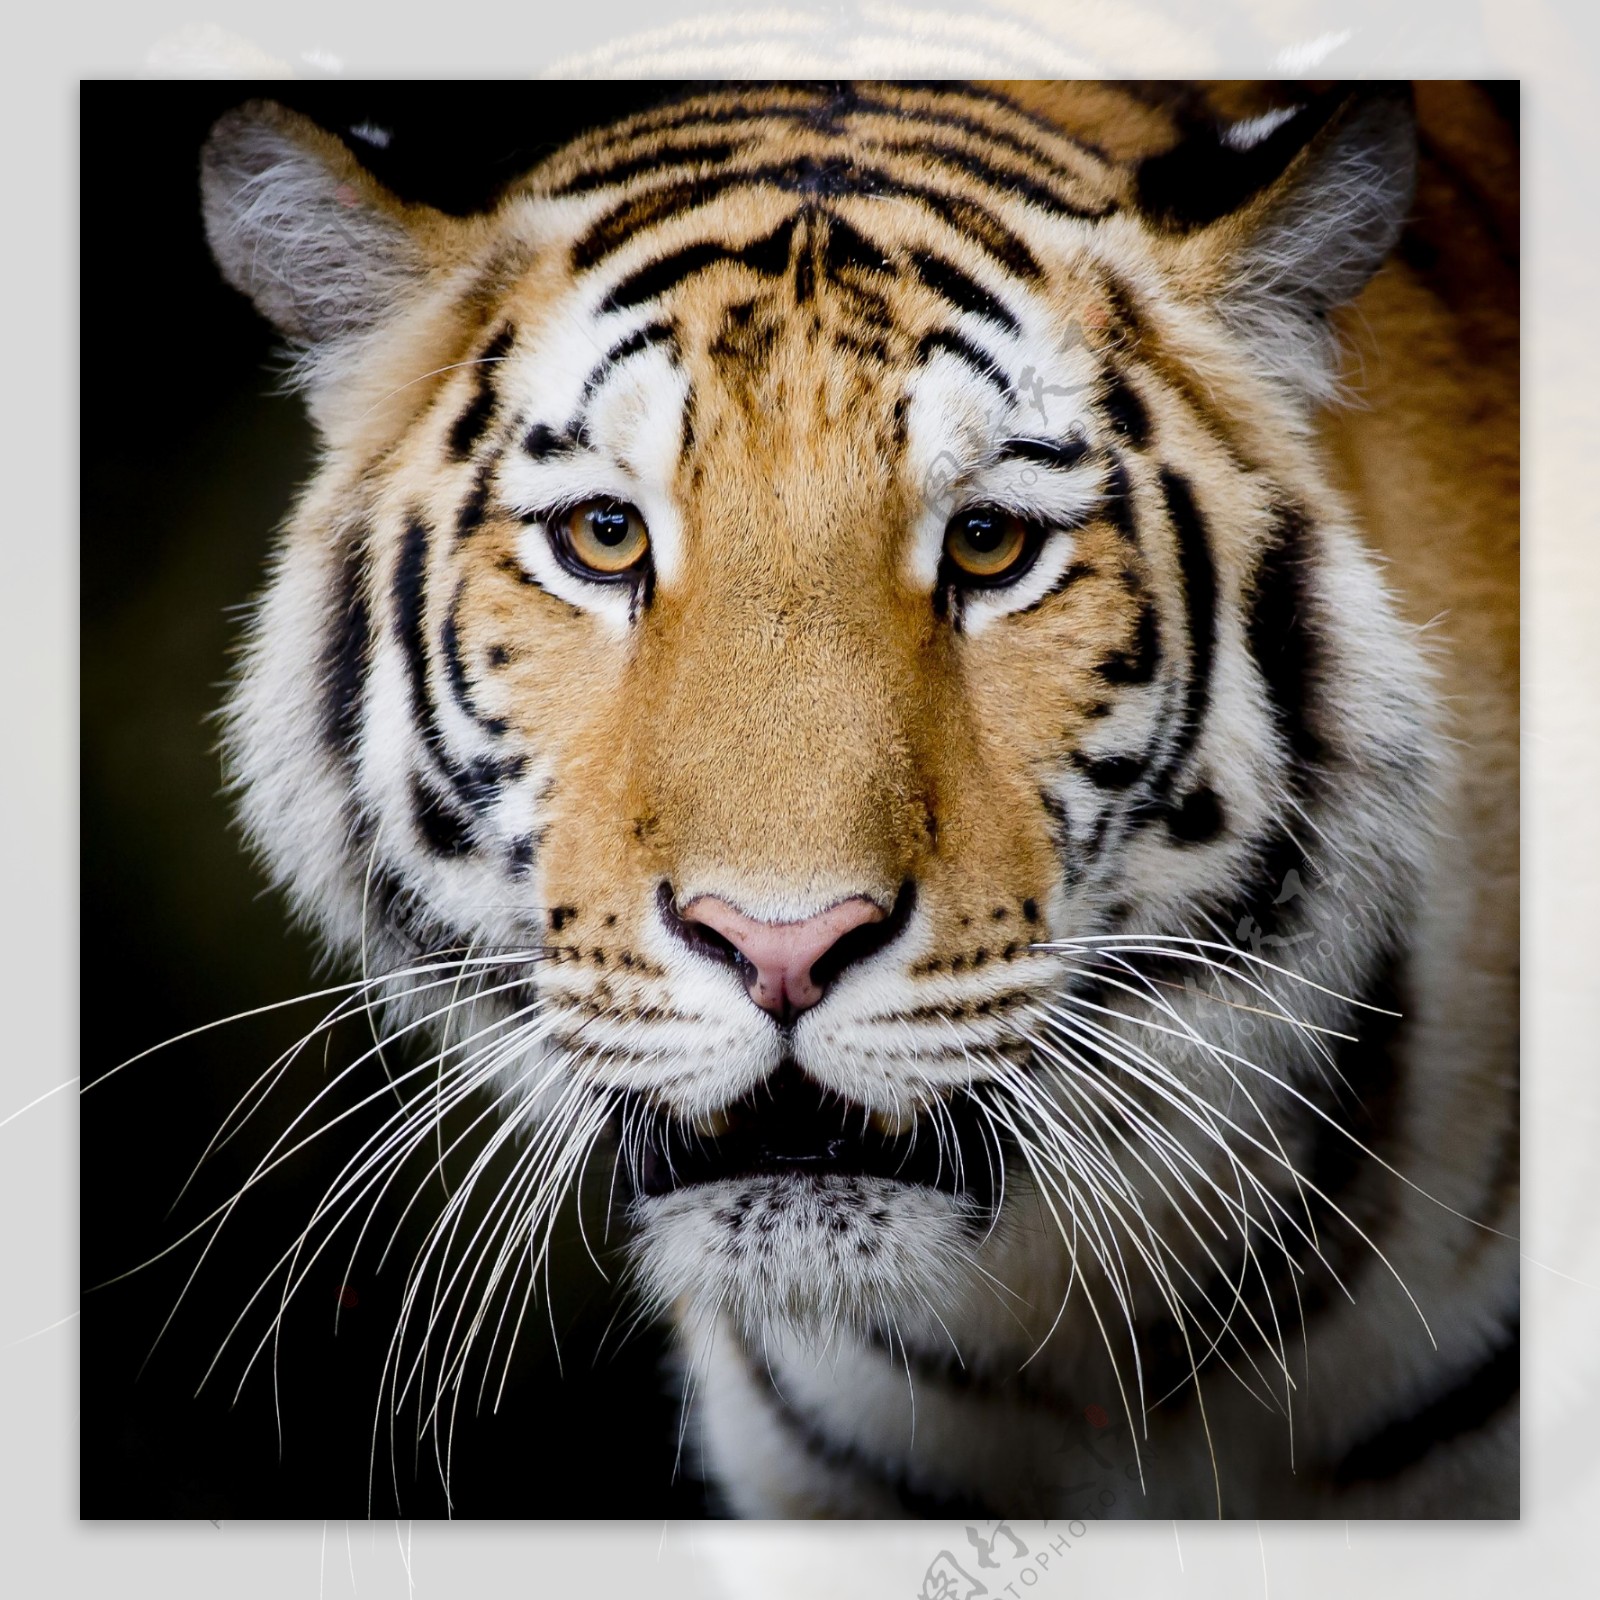 漂亮的大老虎图片